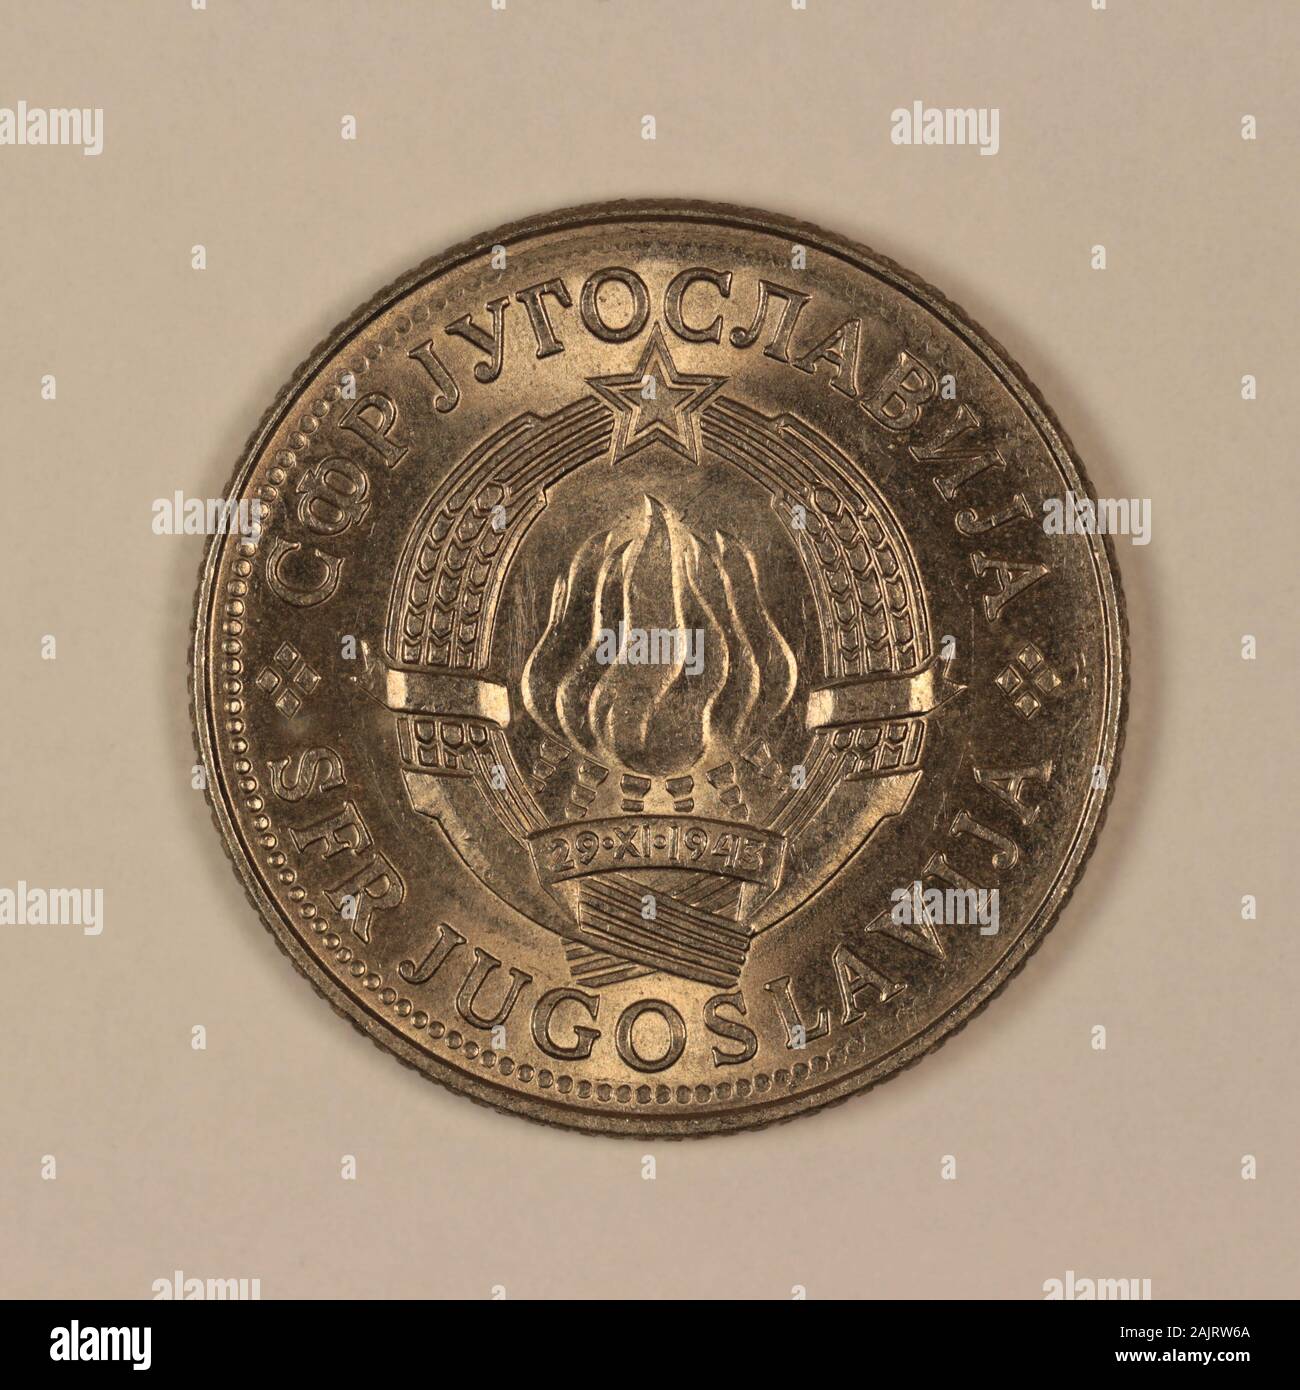 Vorderseite einer ehemaligen Jugoslawischen 10 Dinar Münze Stock Photo